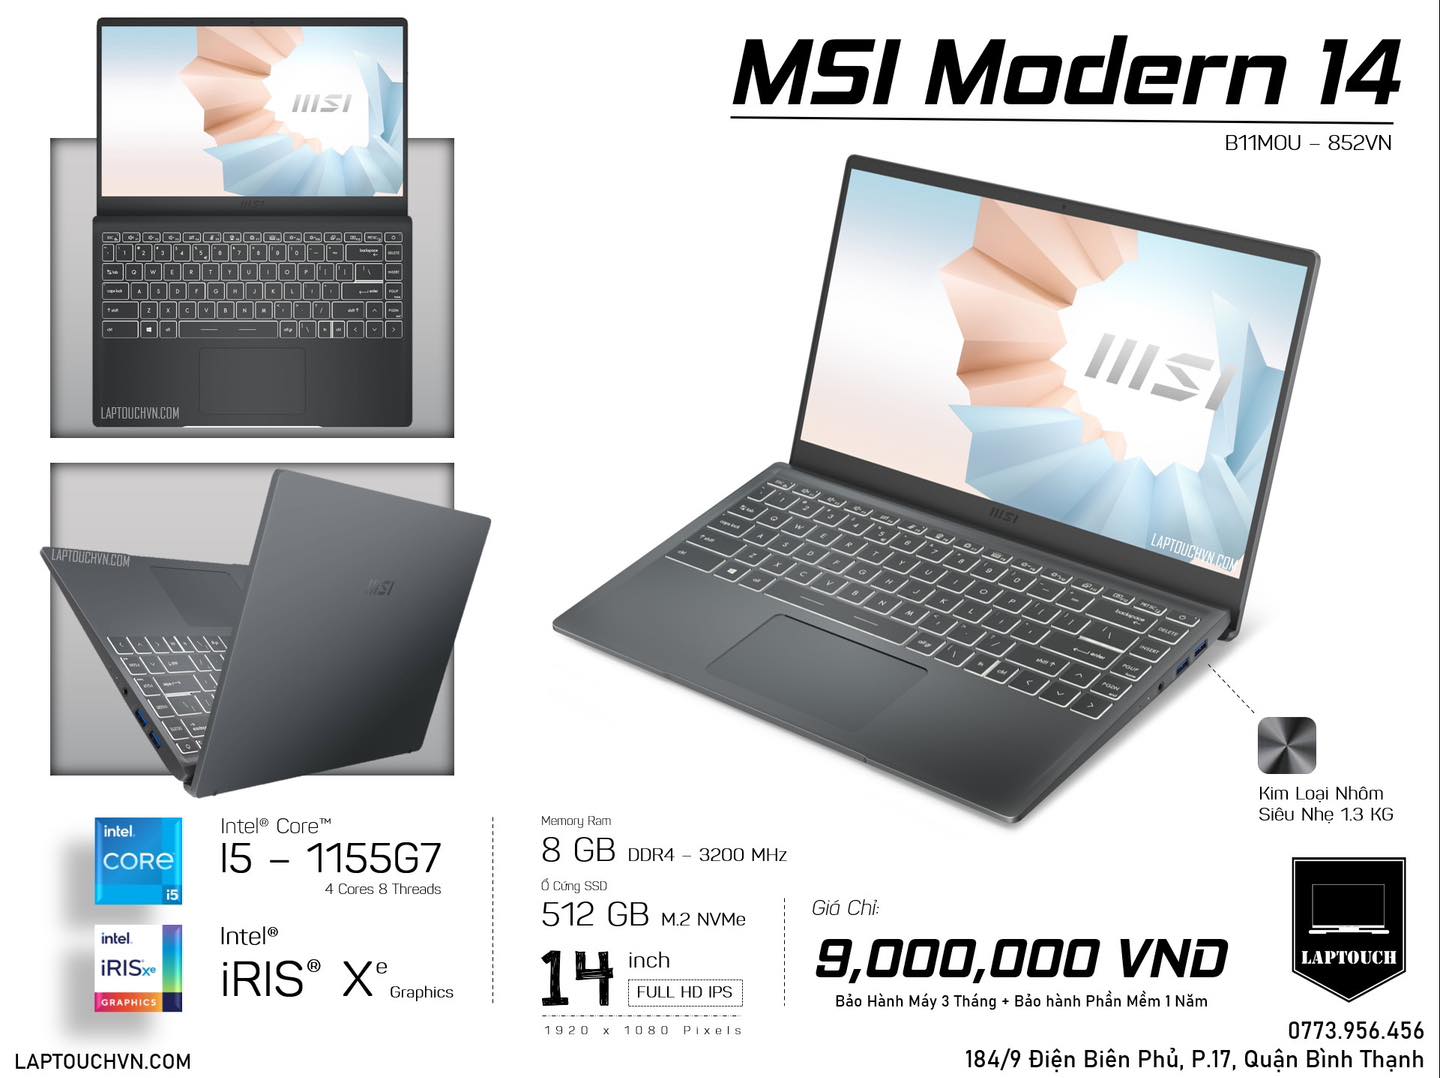 MSI Modern 14